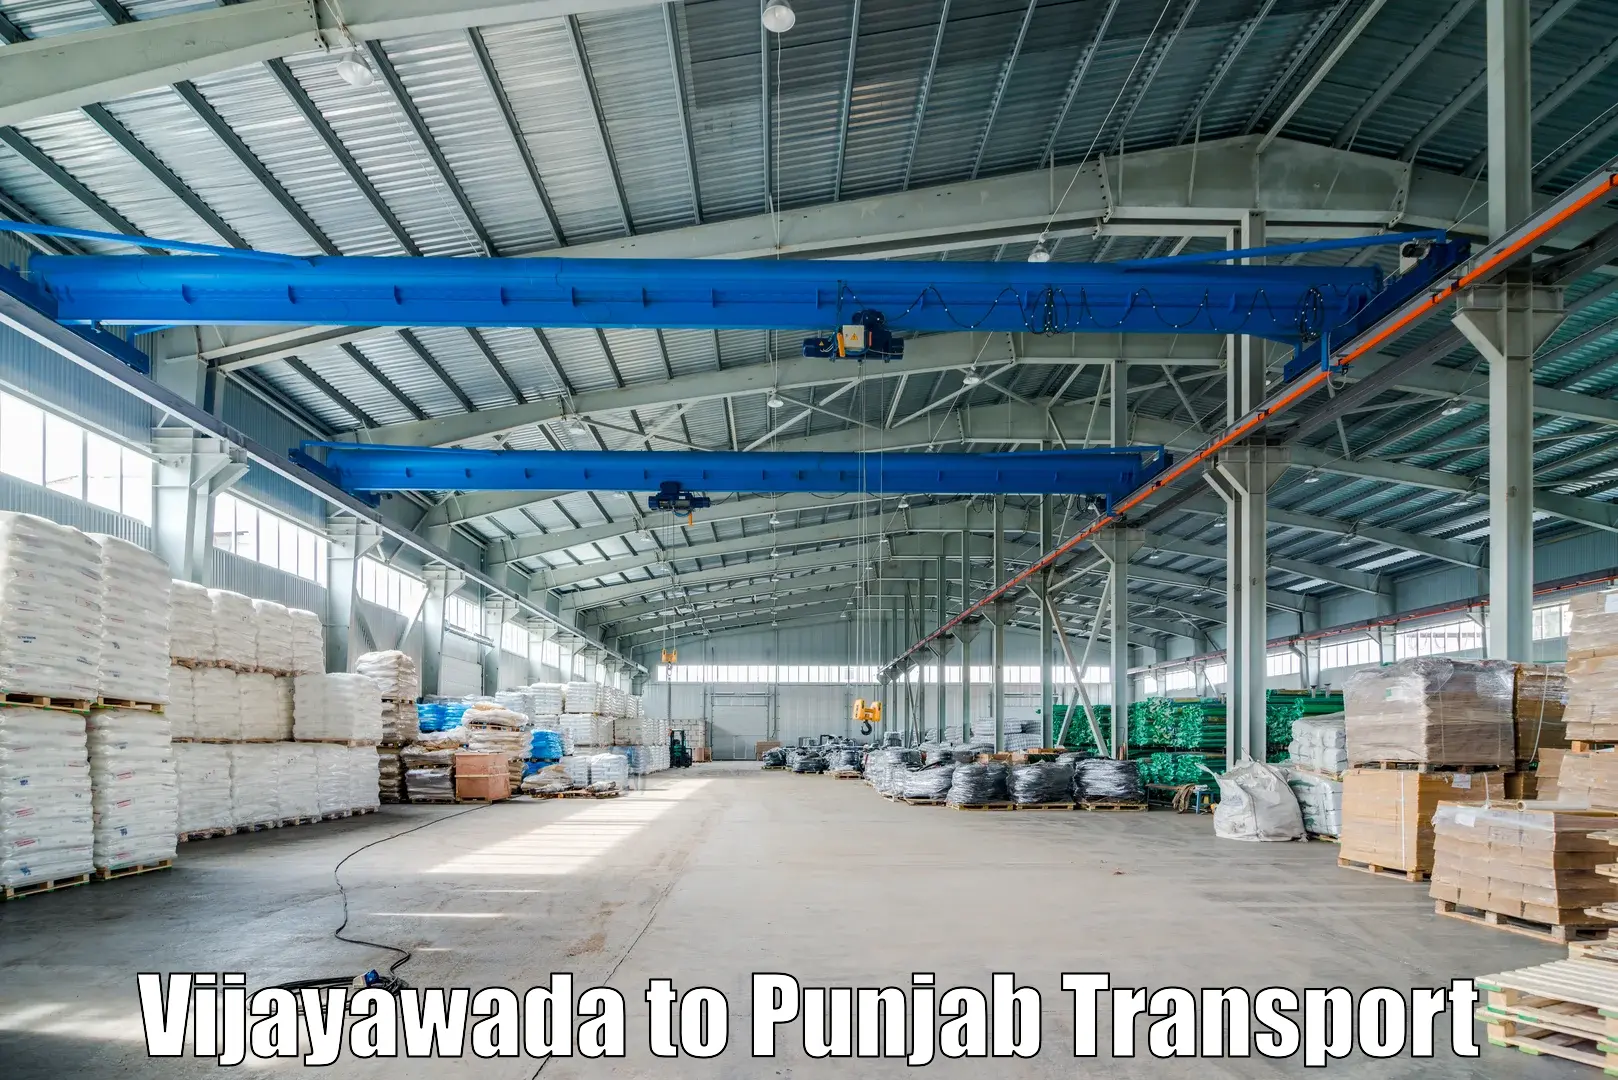 Online transport service Vijayawada to Amritsar